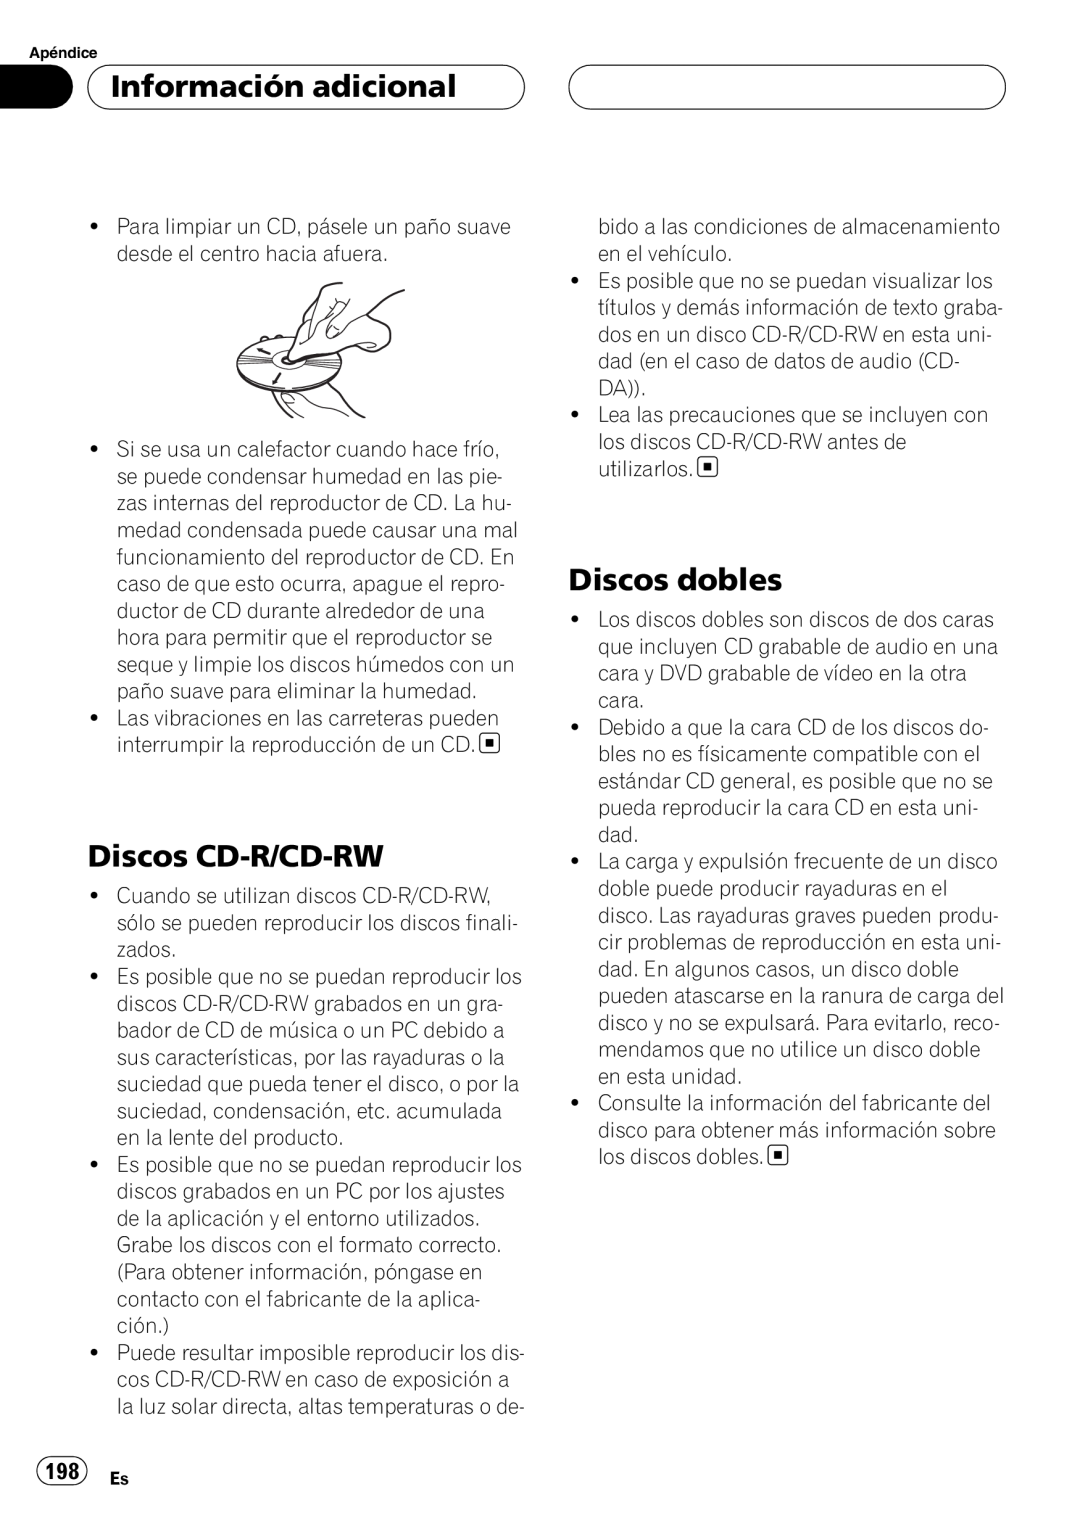 Pioneer DEH-P75BT operation manual Discos CD-R/CD-RW, Discos dobles, 198 Es, Información adicional 